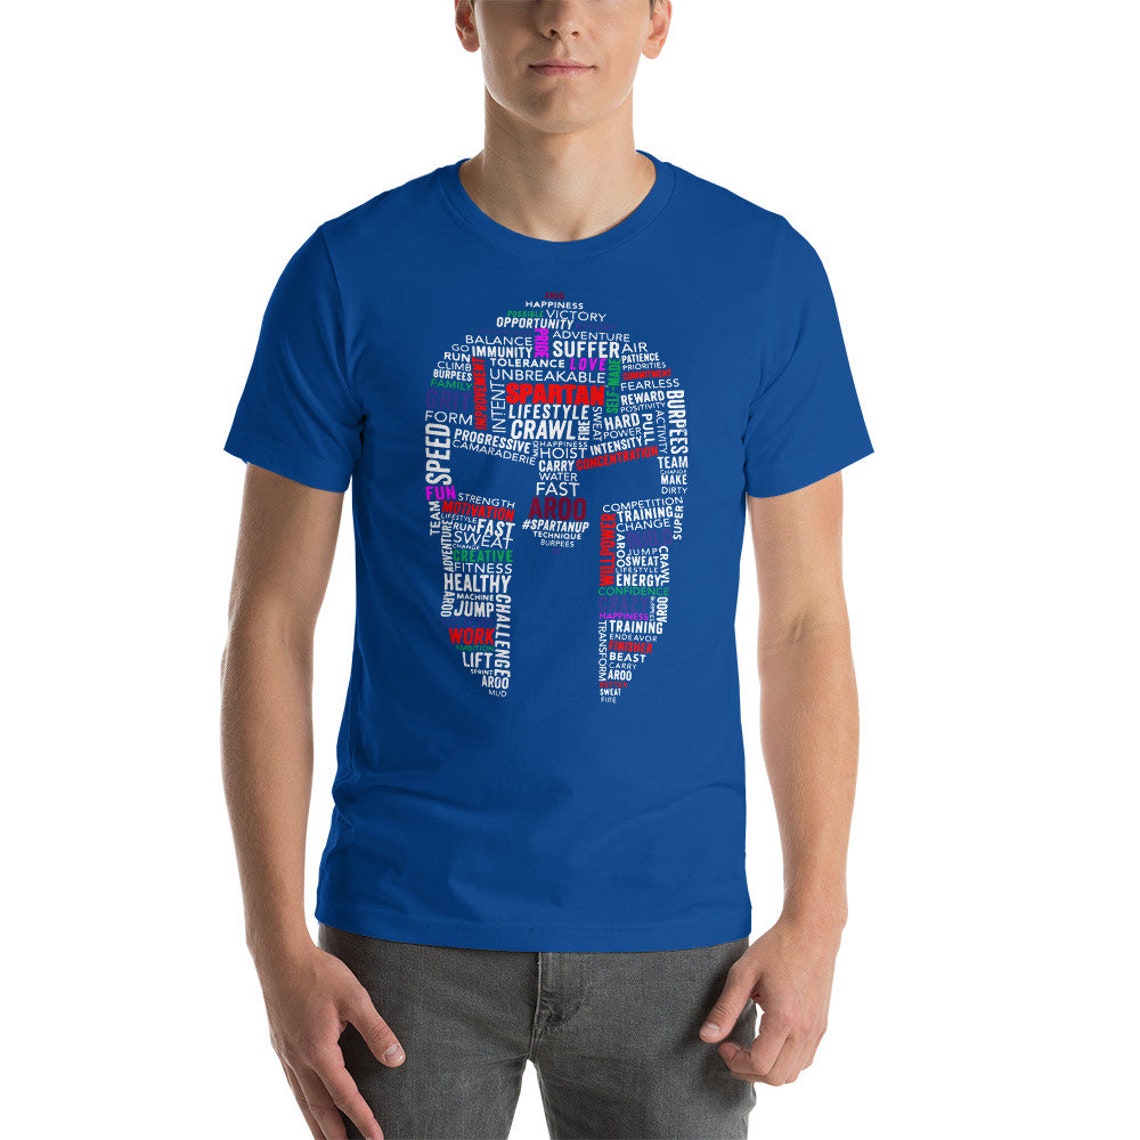 Spartan Race T-shirt unisexe - Etsy France